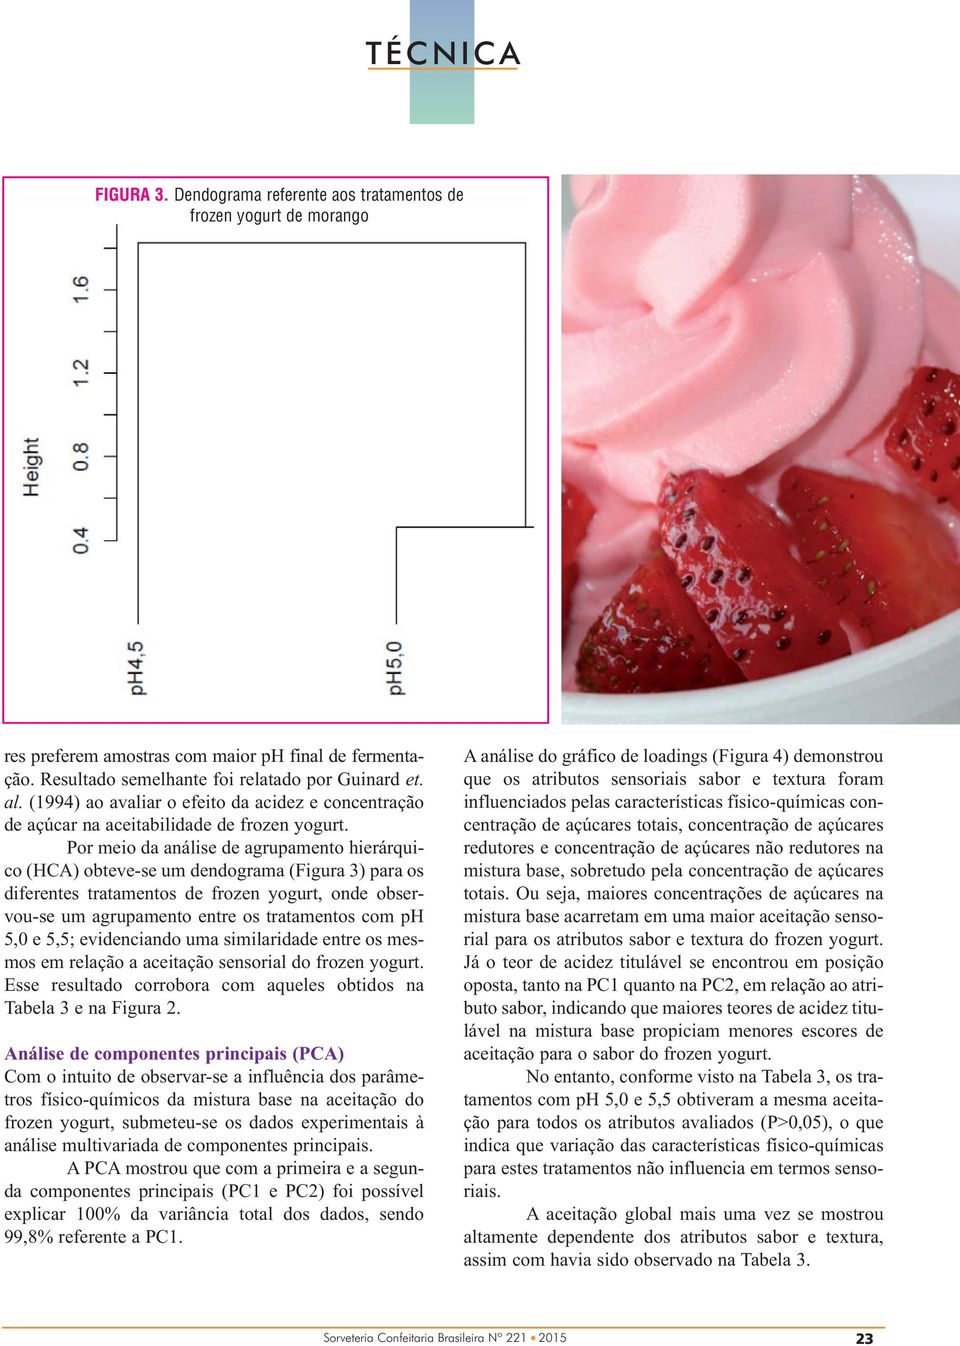 Por meio da análise de agrupamento hierárquico (HCA) obteve-se um dendograma (Figura 3) para os diferentes tratamentos de frozen yogurt, onde observou-se um agrupamento entre os tratamentos com ph